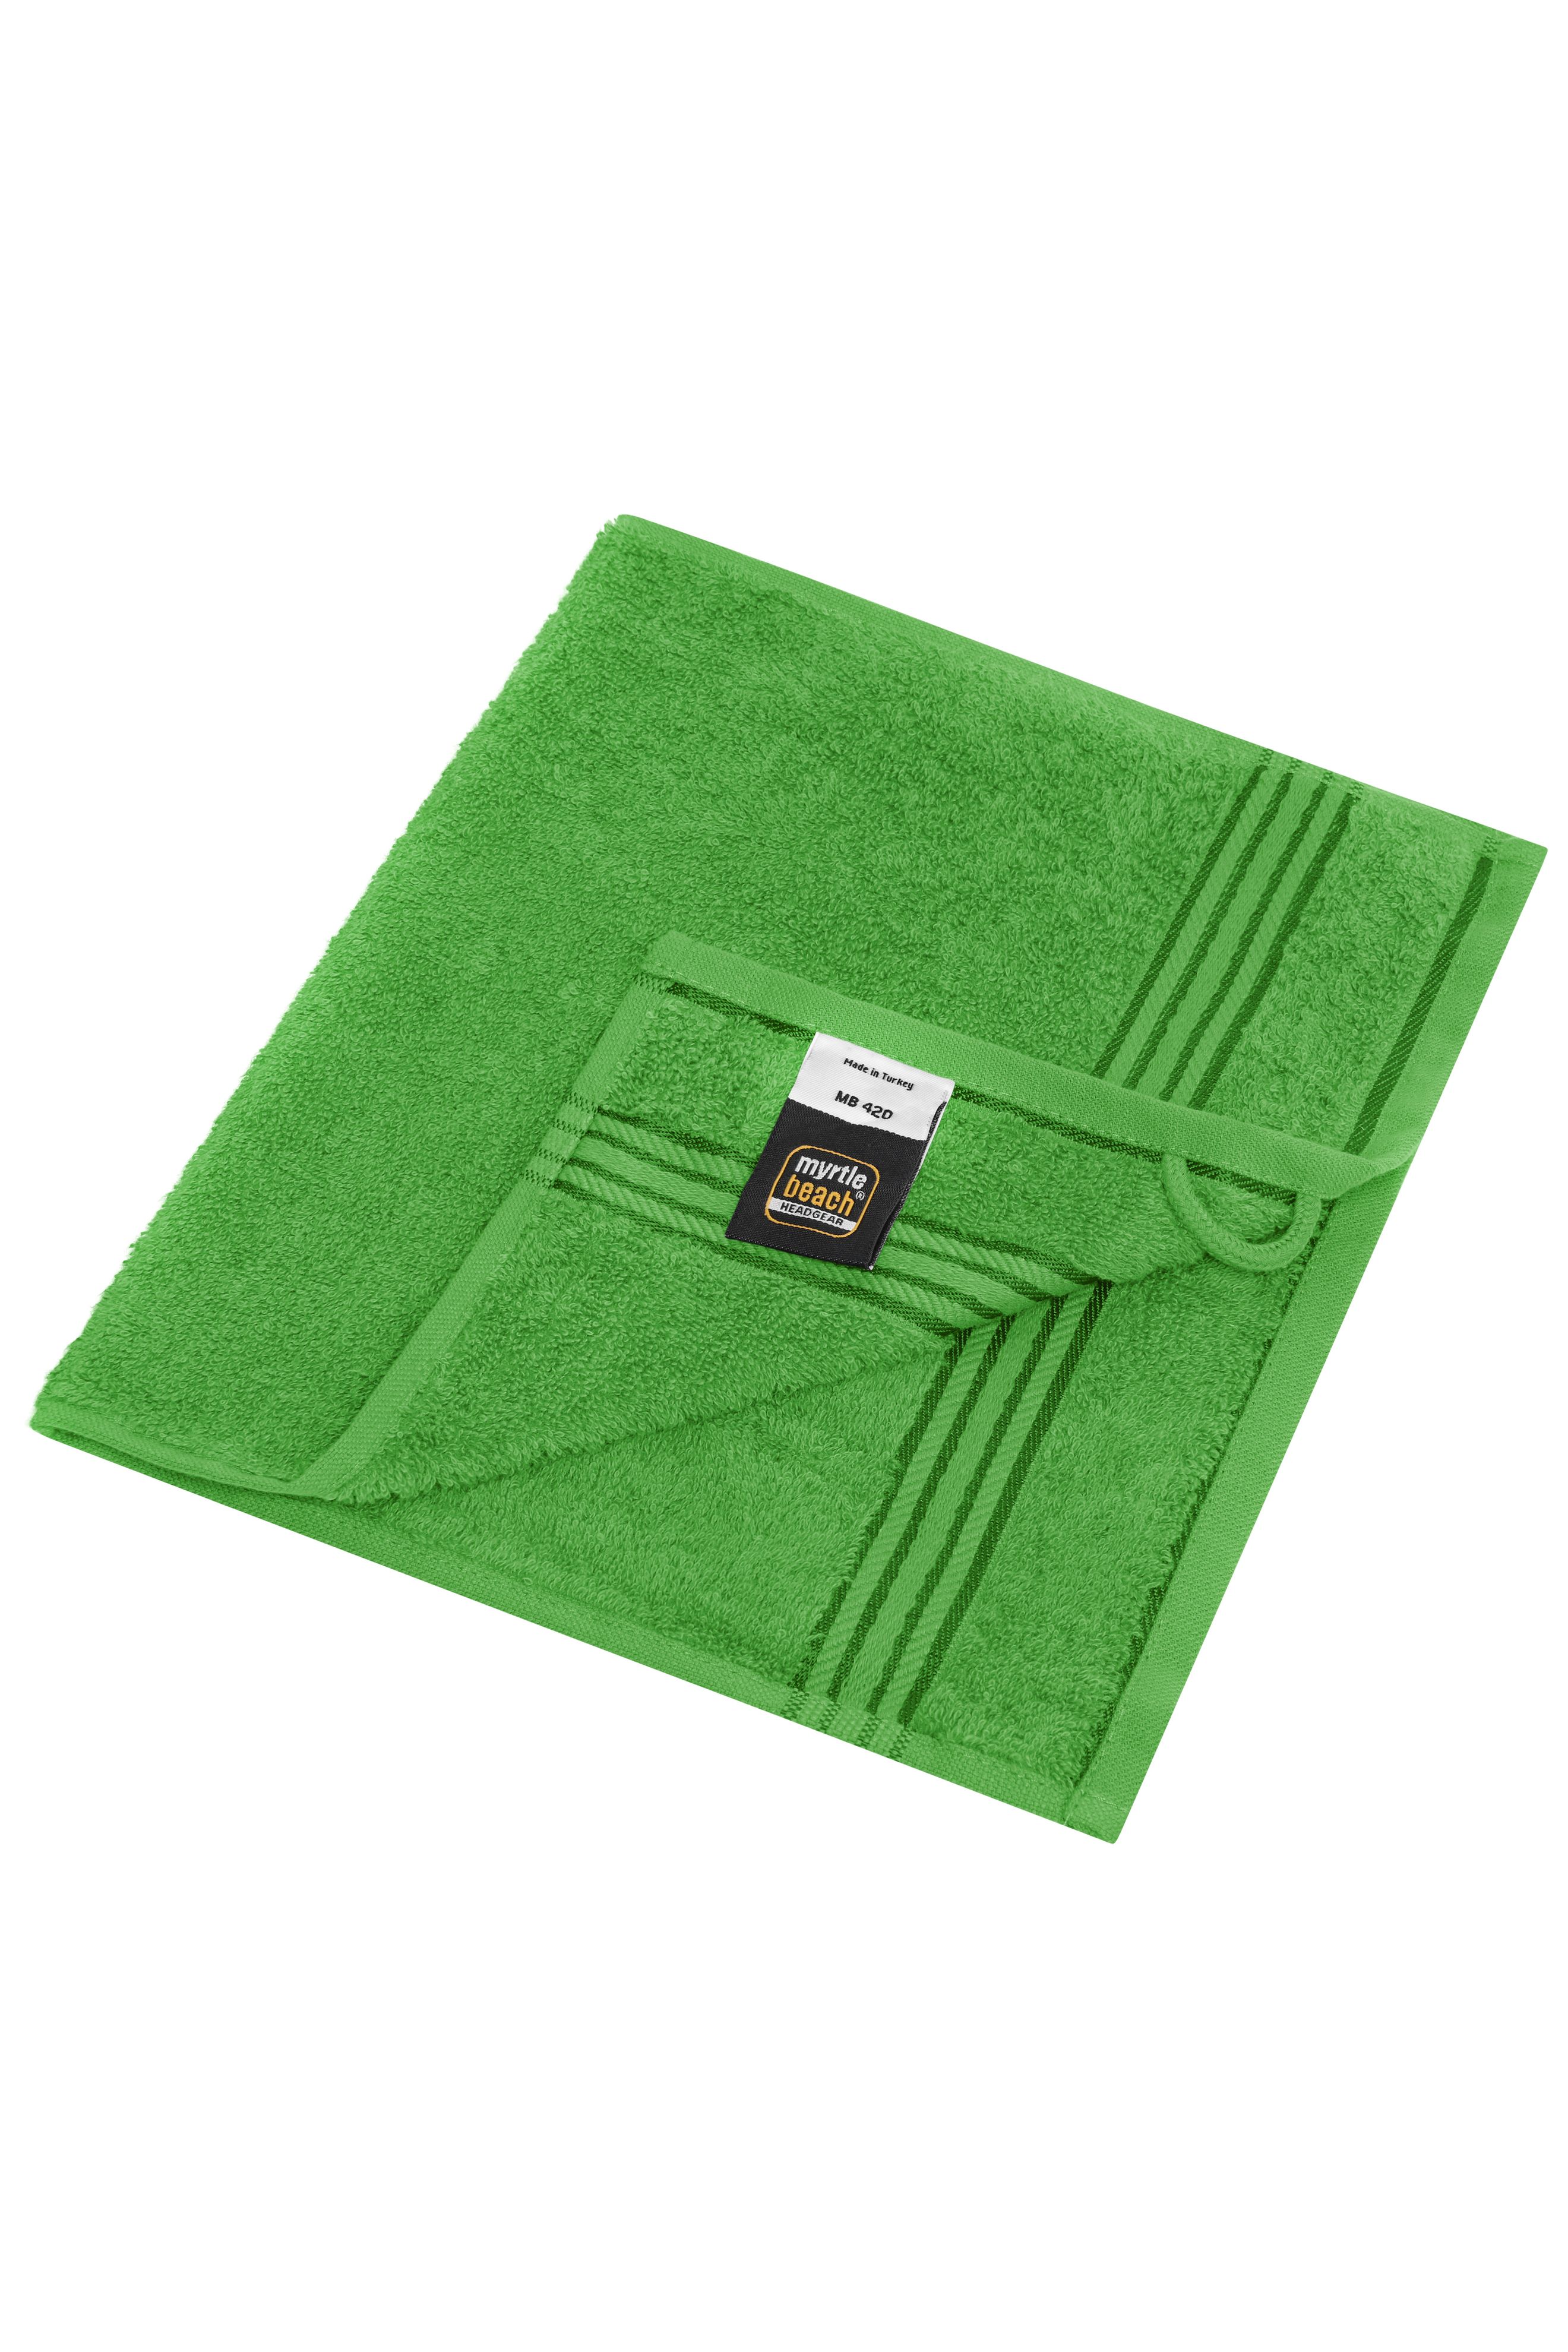 Guest Towel MB420 Gästetuch in vielen Farben